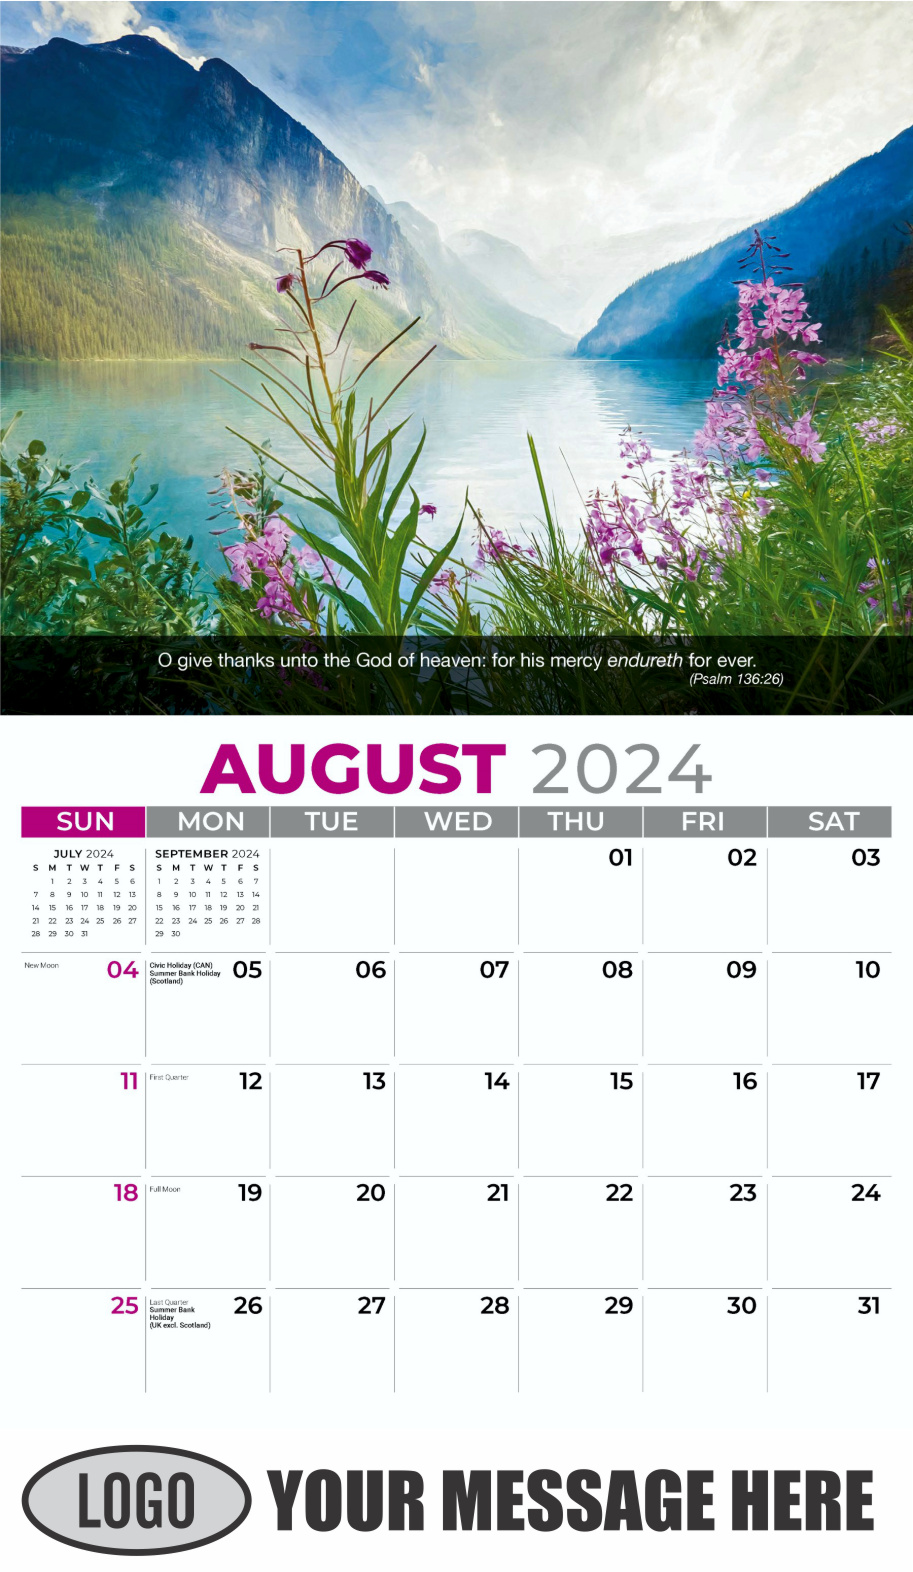 Faith Passages 2024 Christian Business Advertising Calendar - August